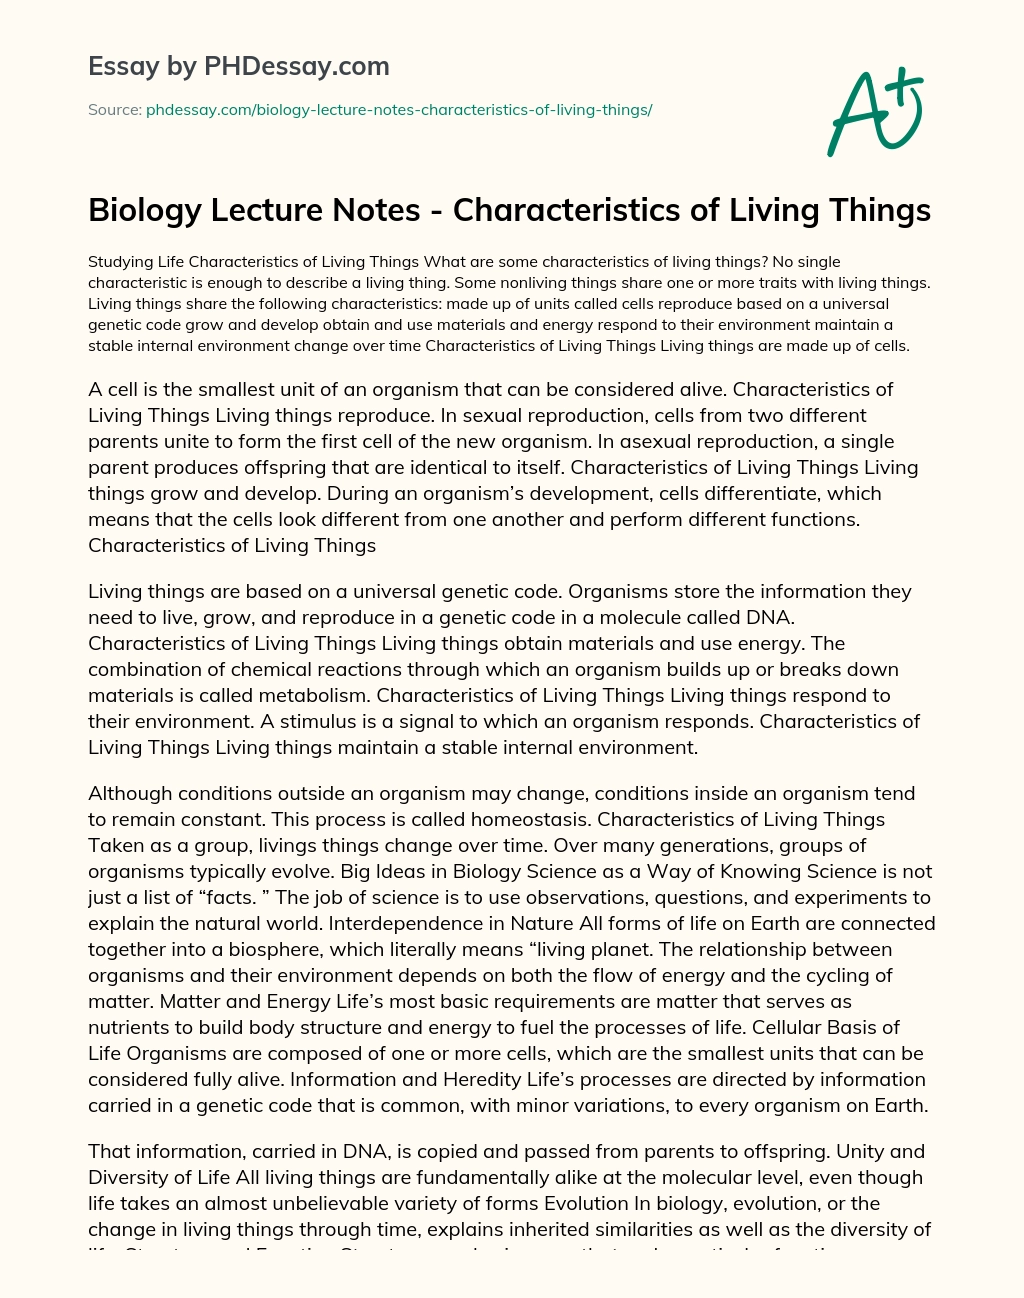 living things essay